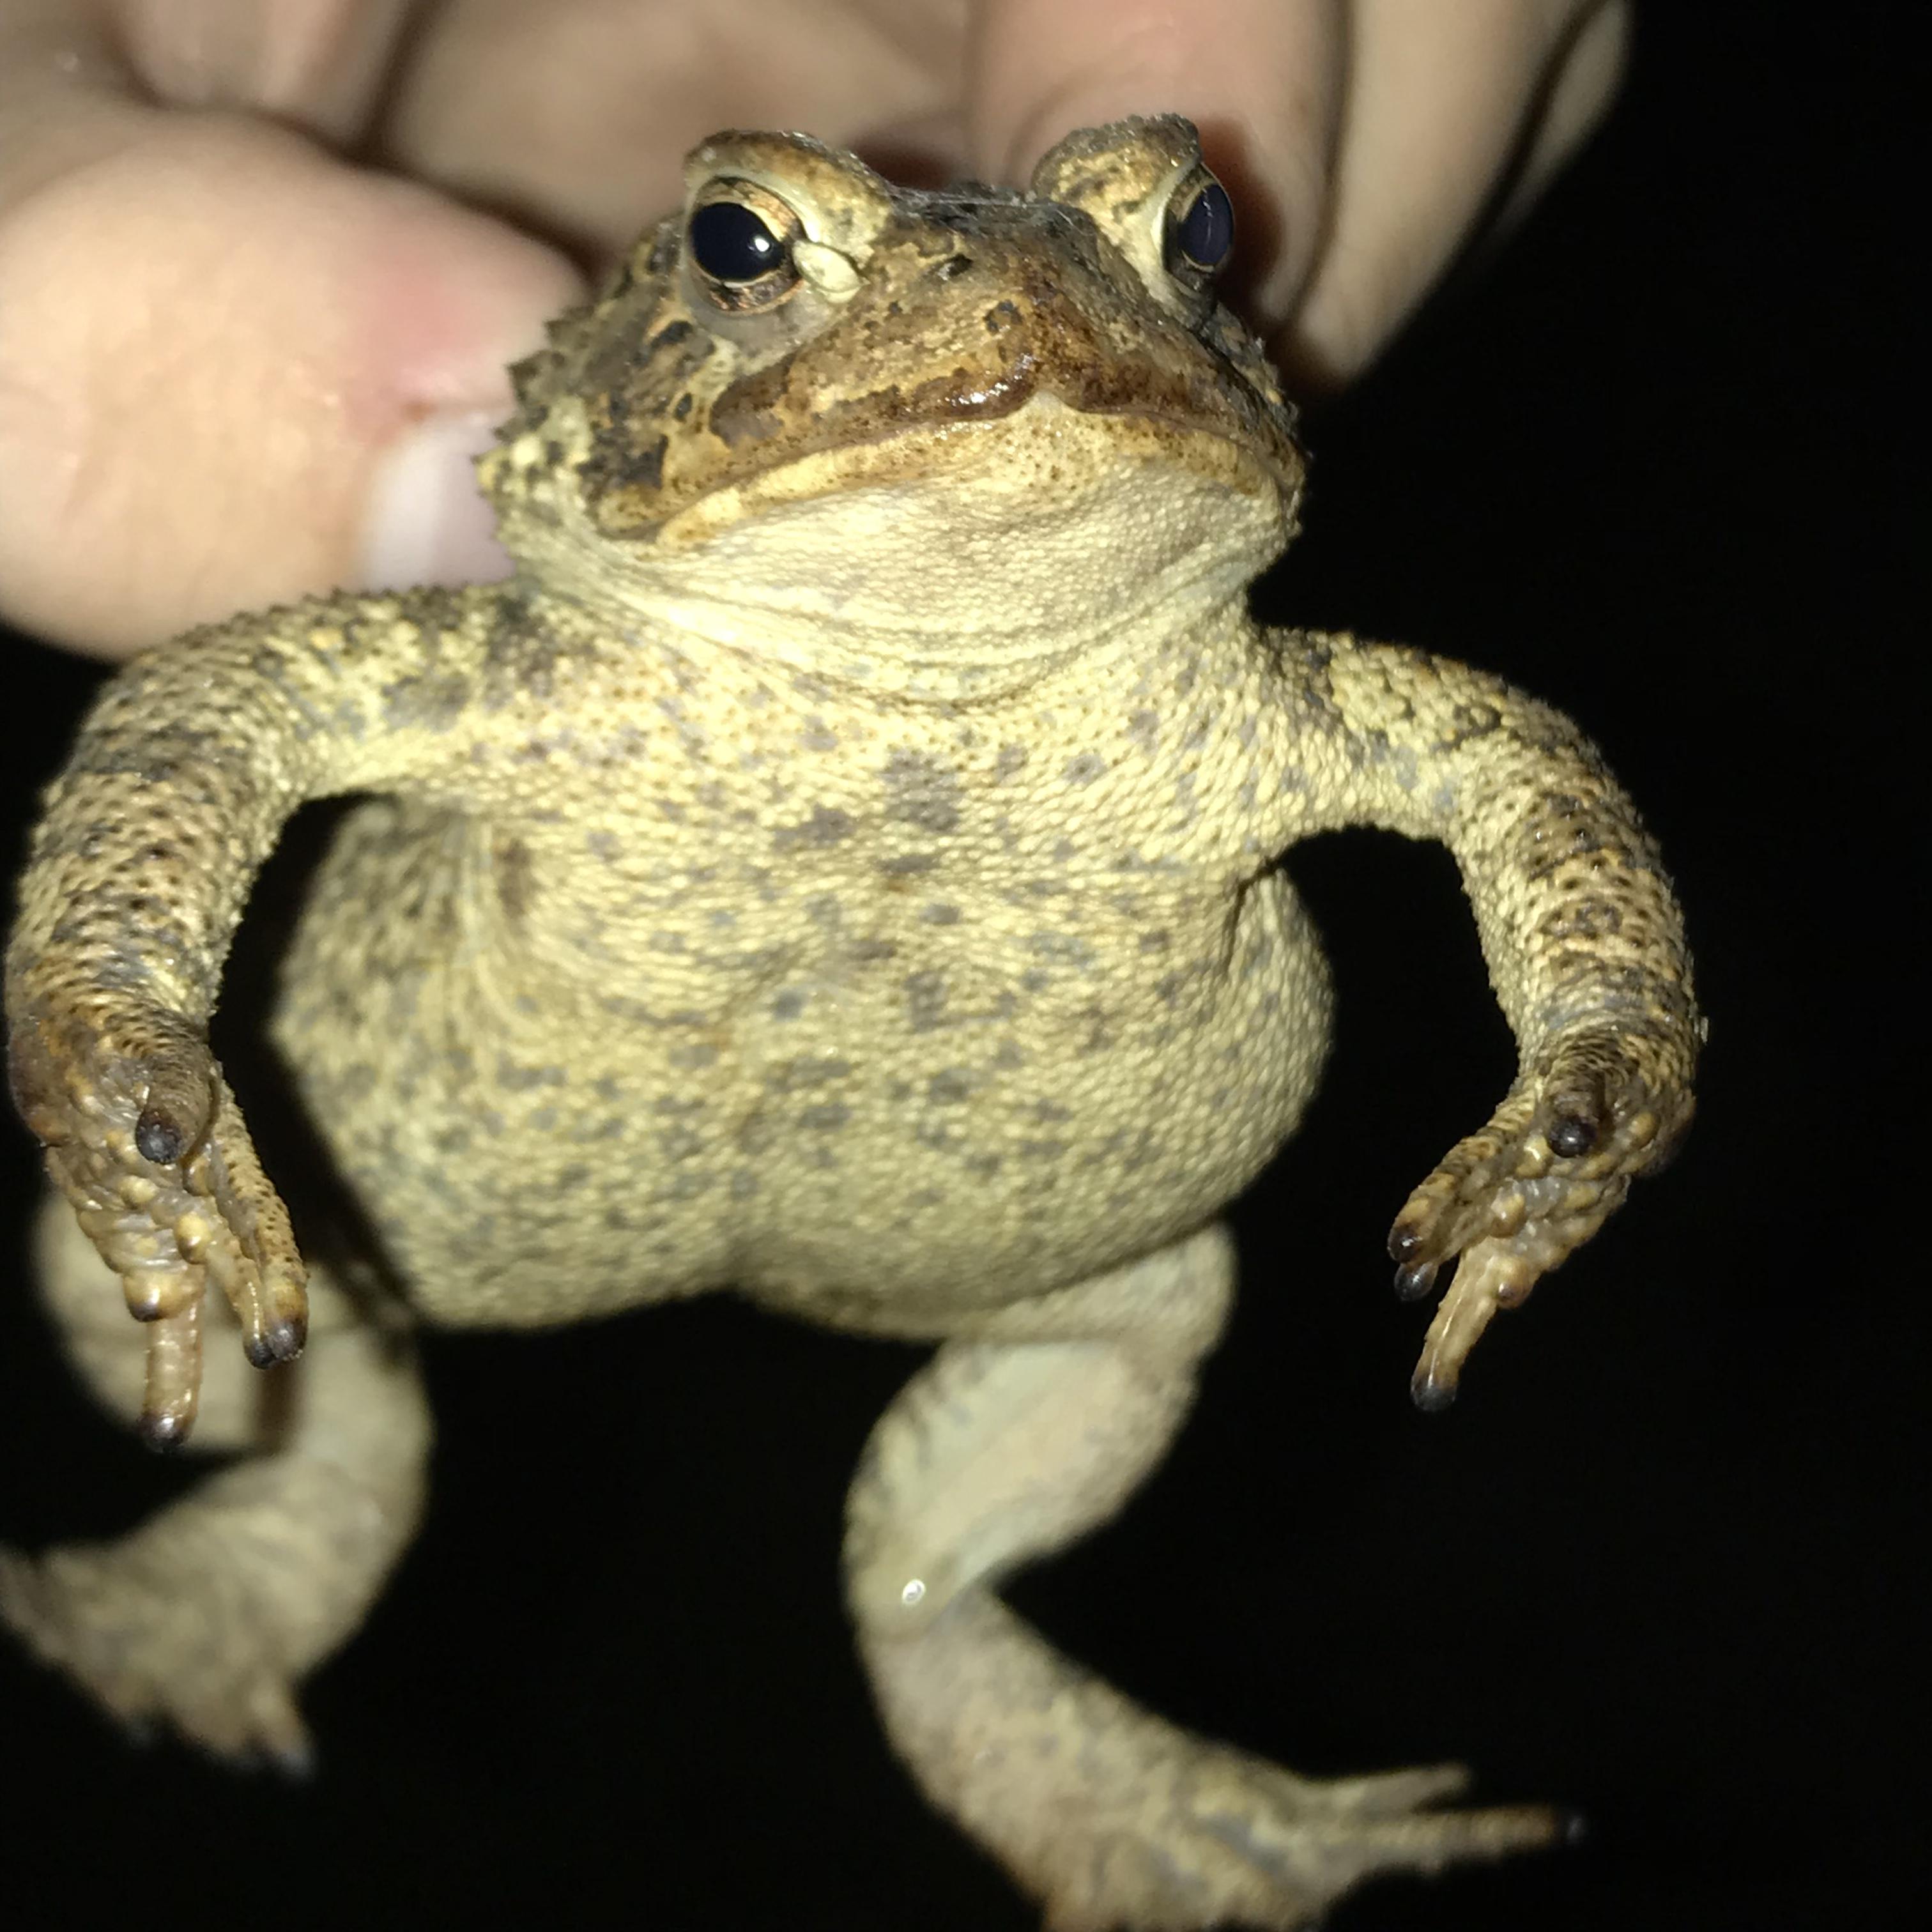 Grumpy toad - Album on Imgur